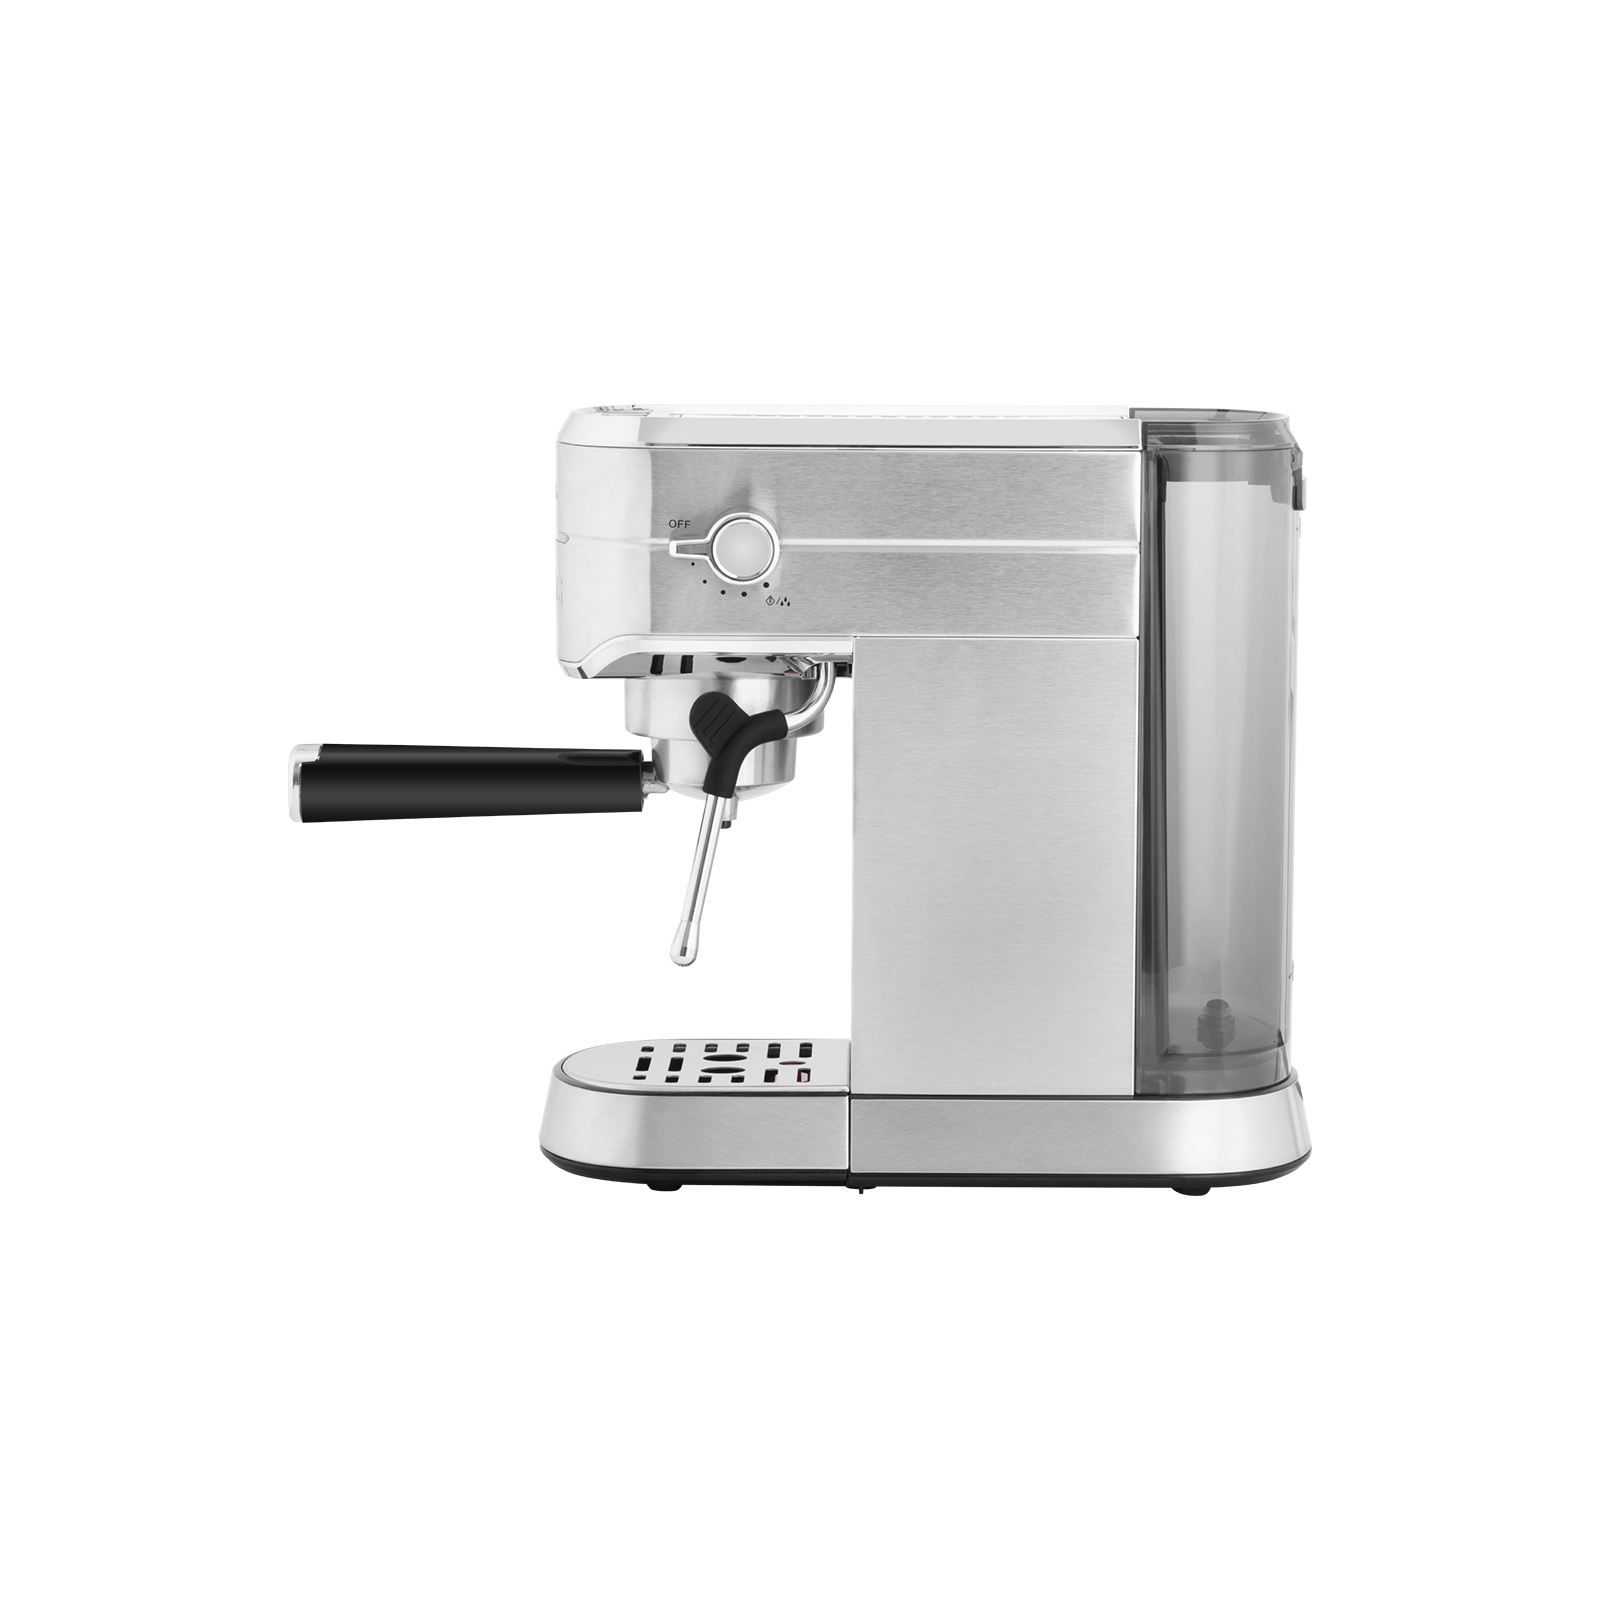 Рожковая кофеварка эспрессо ECG ESP 20501 Iron (ESP20501 Iron) изображение 4